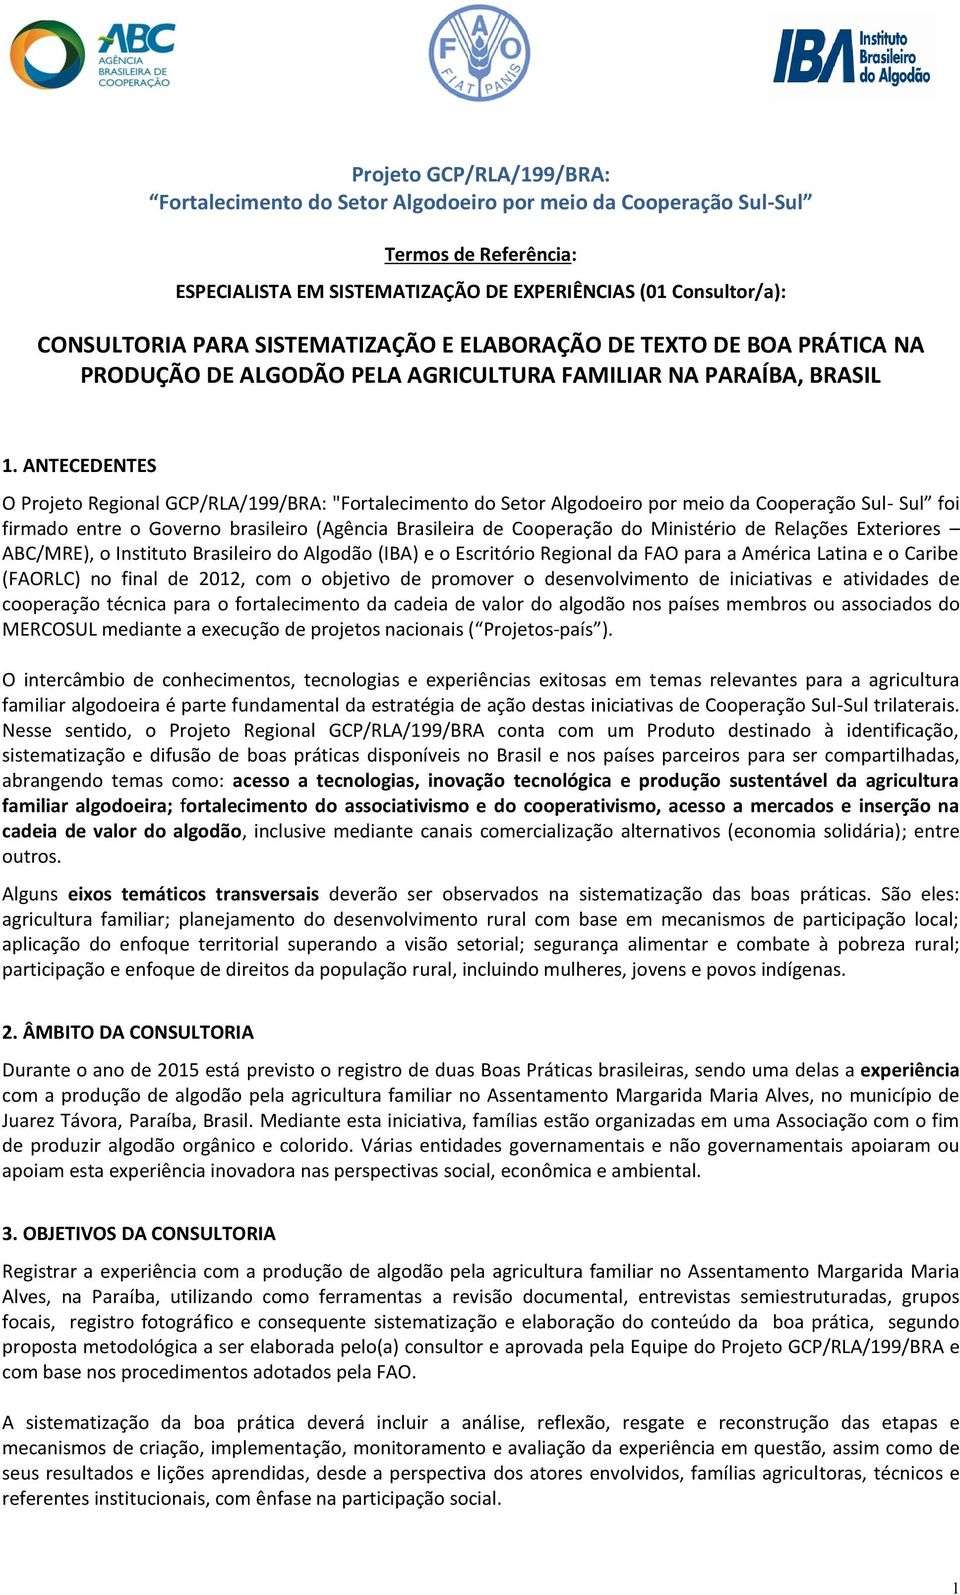 ANTECEDENTES O Projeto Regional GCP/RLA/199/BRA: "Fortalecimento do Setor Algodoeiro por meio da Cooperação Sul- Sul foi firmado entre o Governo brasileiro (Agência Brasileira de Cooperação do